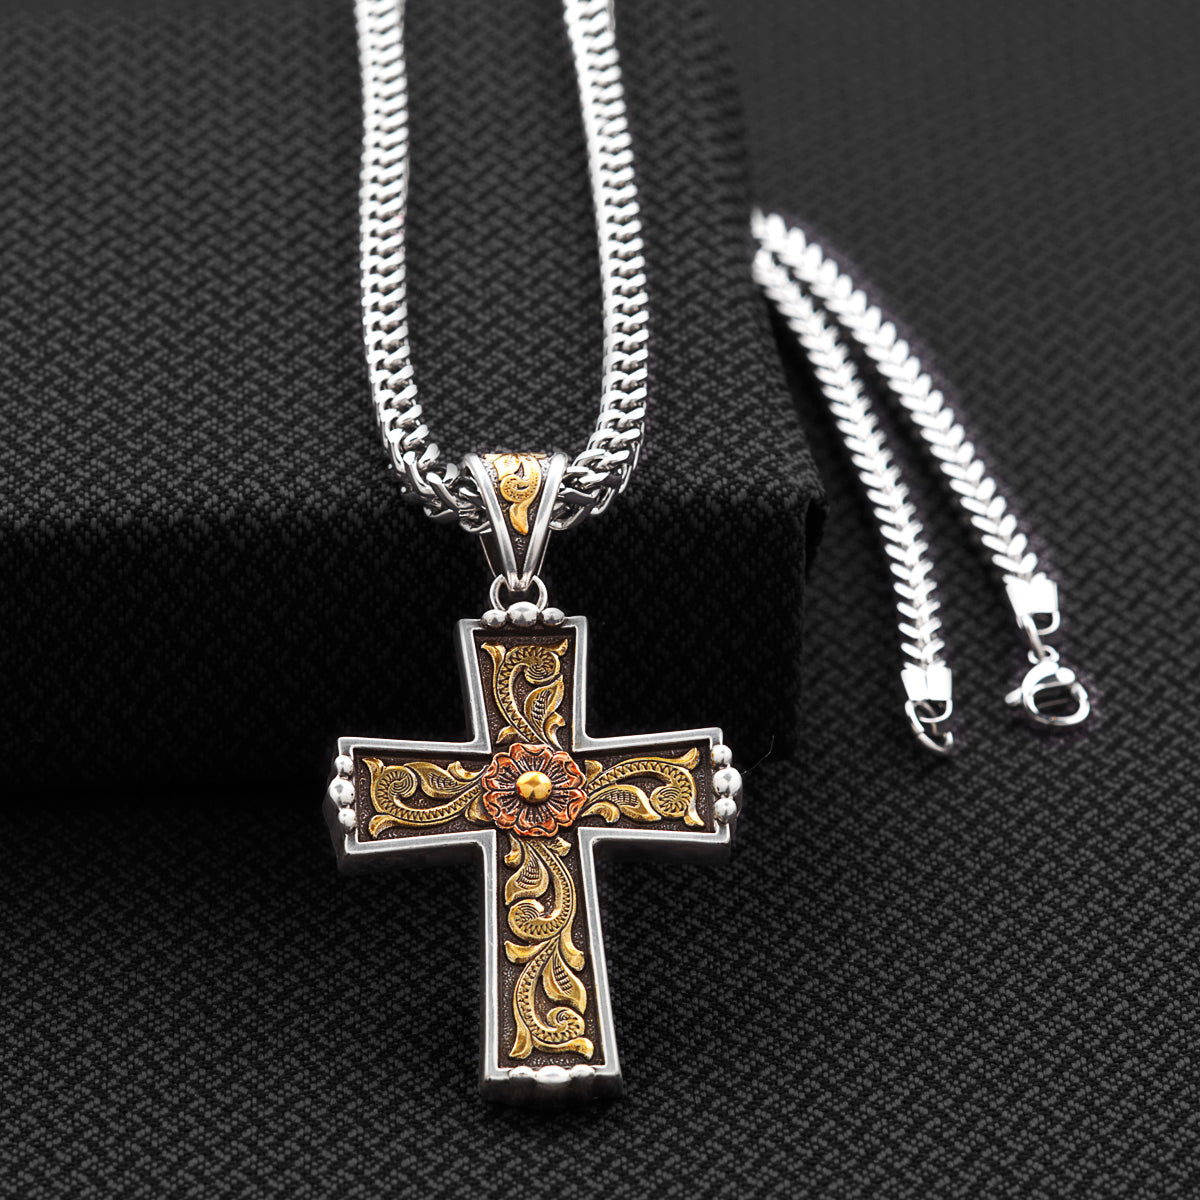 Twister Men's Antique Silver & Gold Cross Pendant Necklace 32146